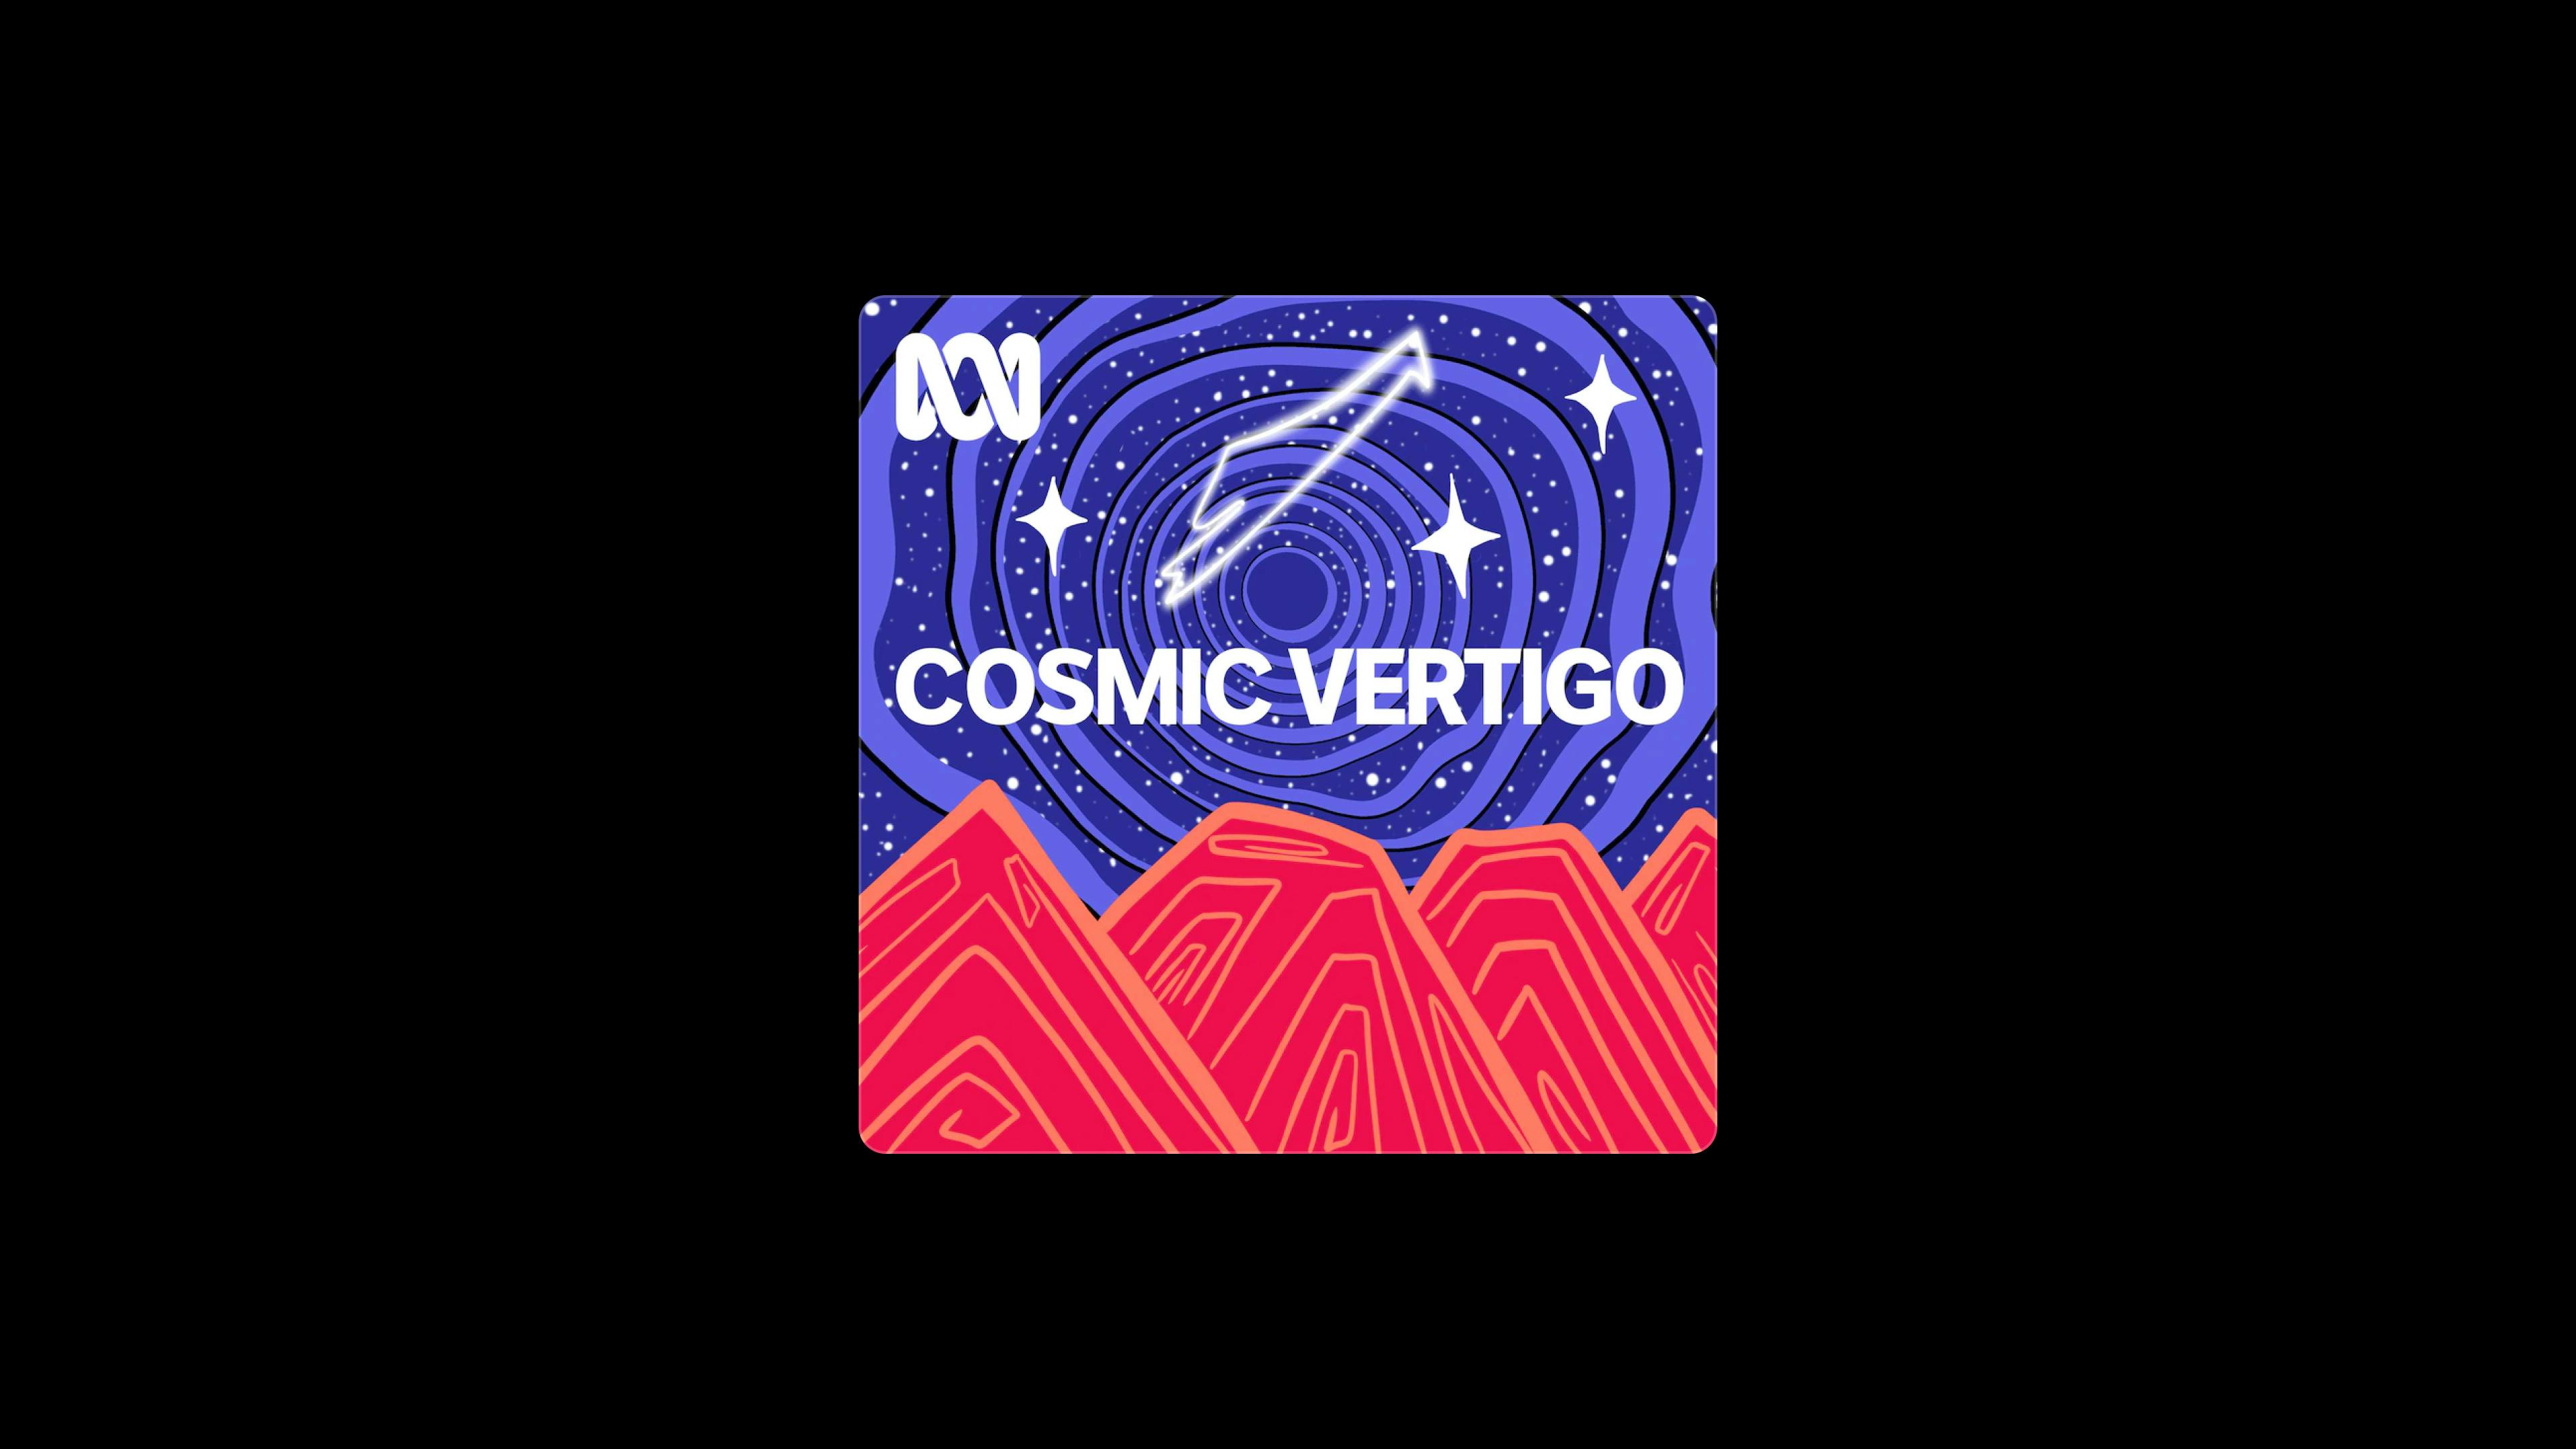 Cosmic vertigo space podcast